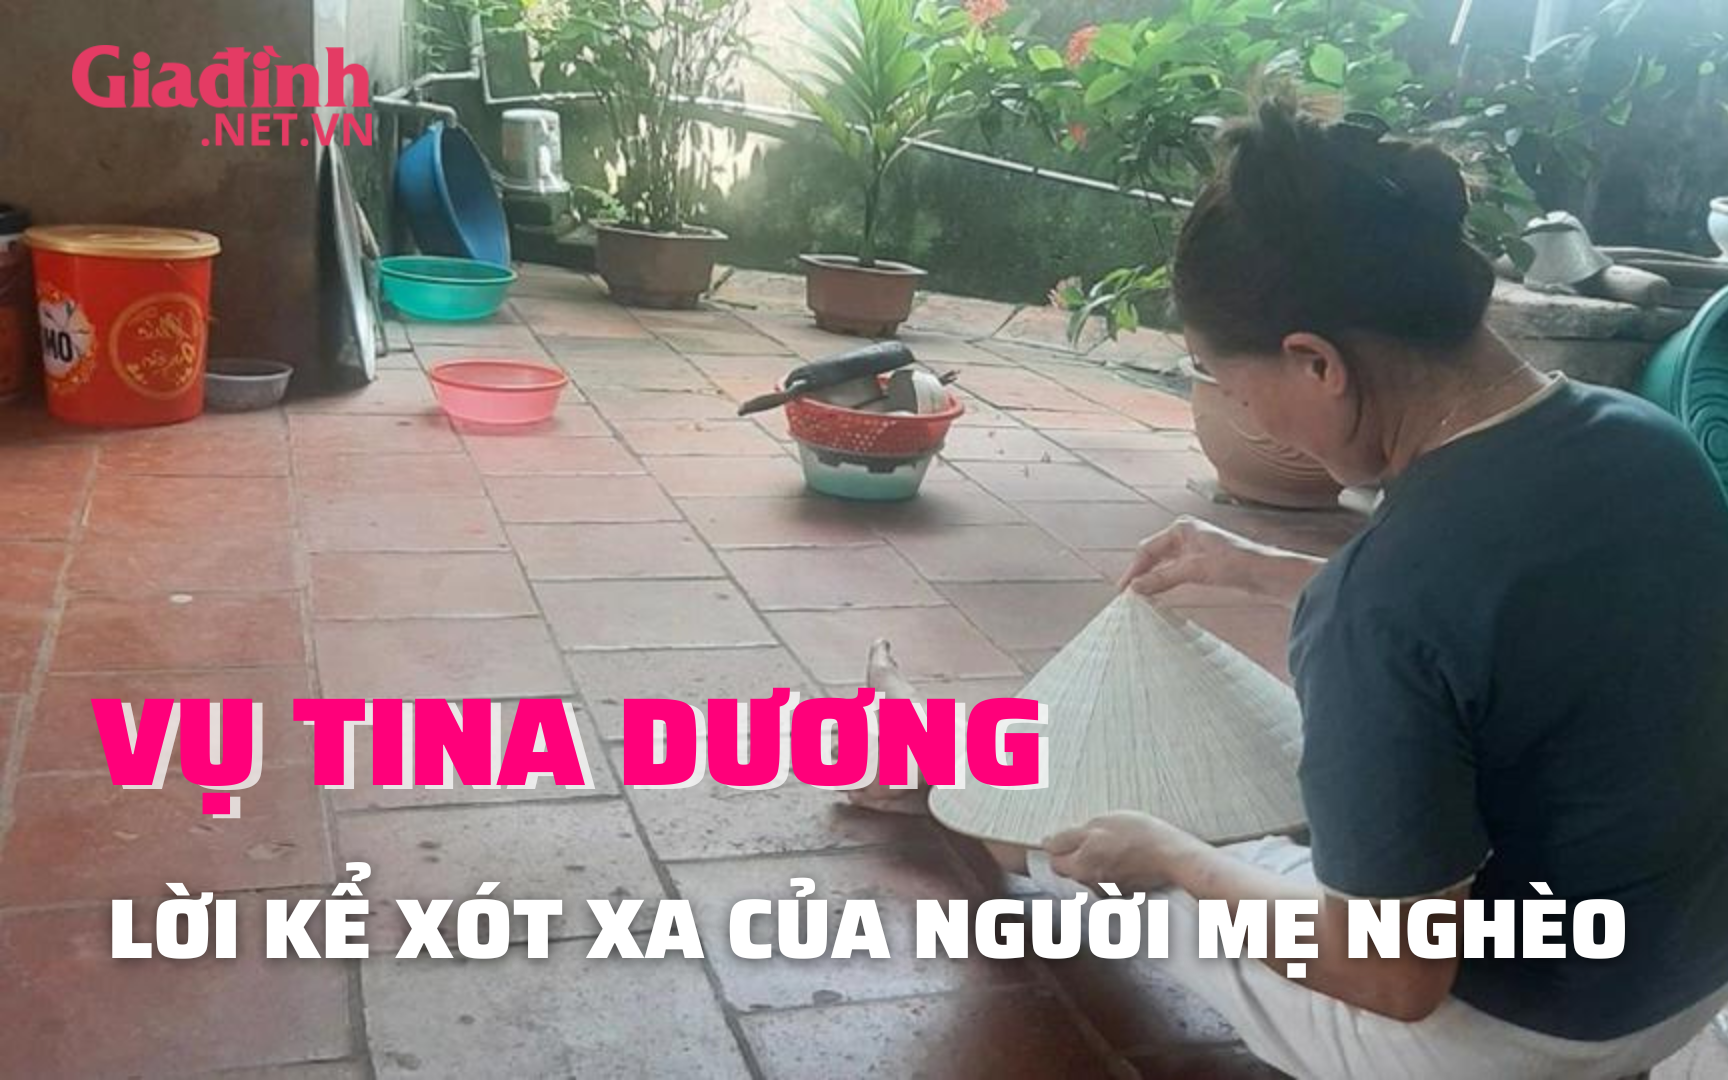 Trải lòng của người mẹ trong vụ Tina Dương nợ hàng chục tỷ đồng